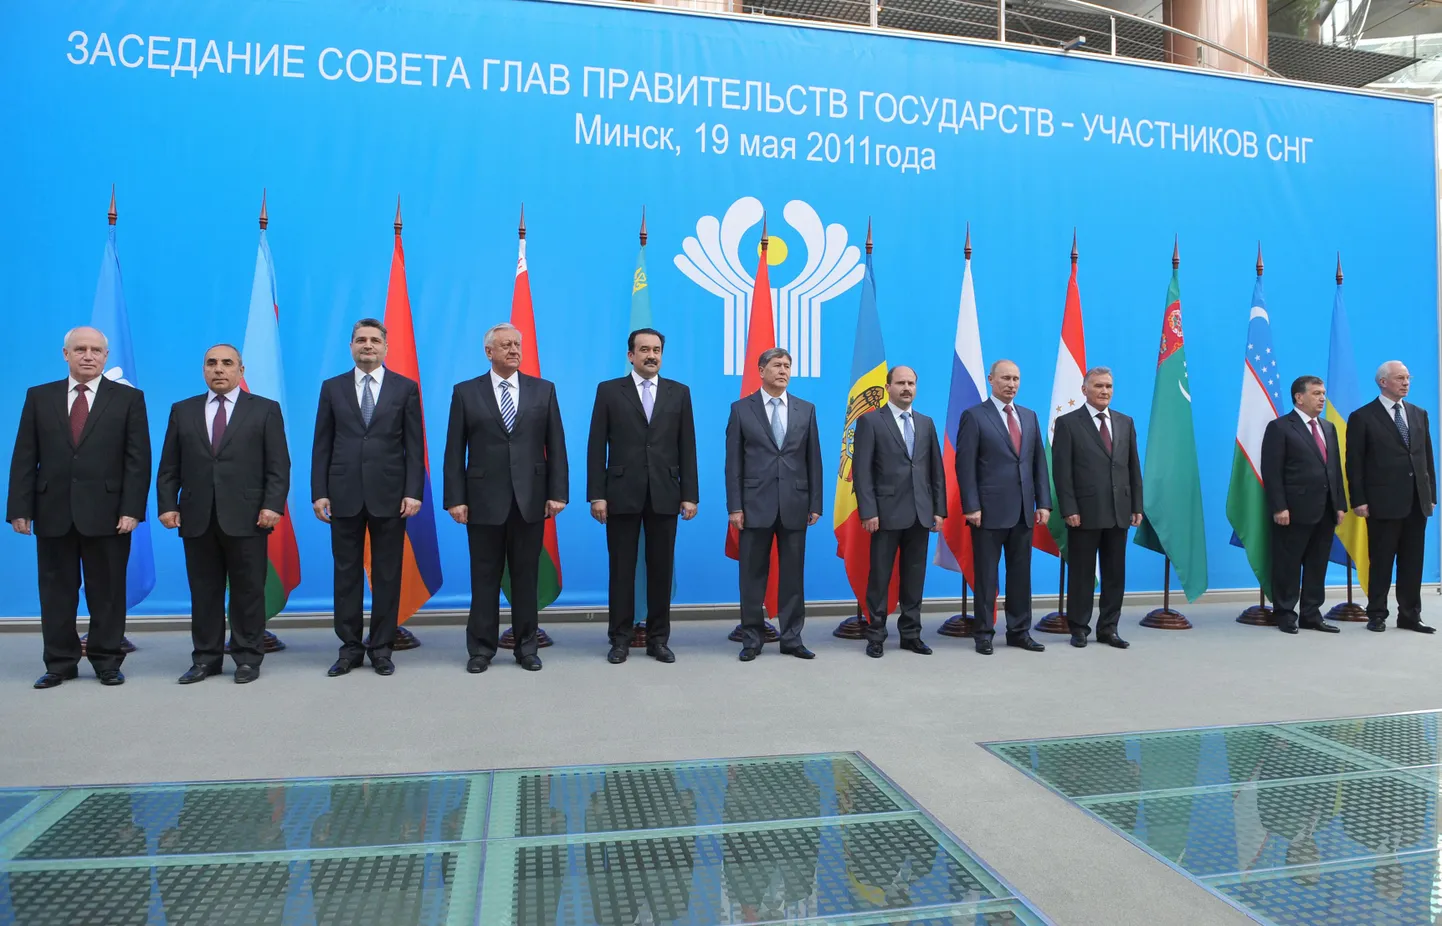 Совет глав правительств СНГ 19 мая в Минске.